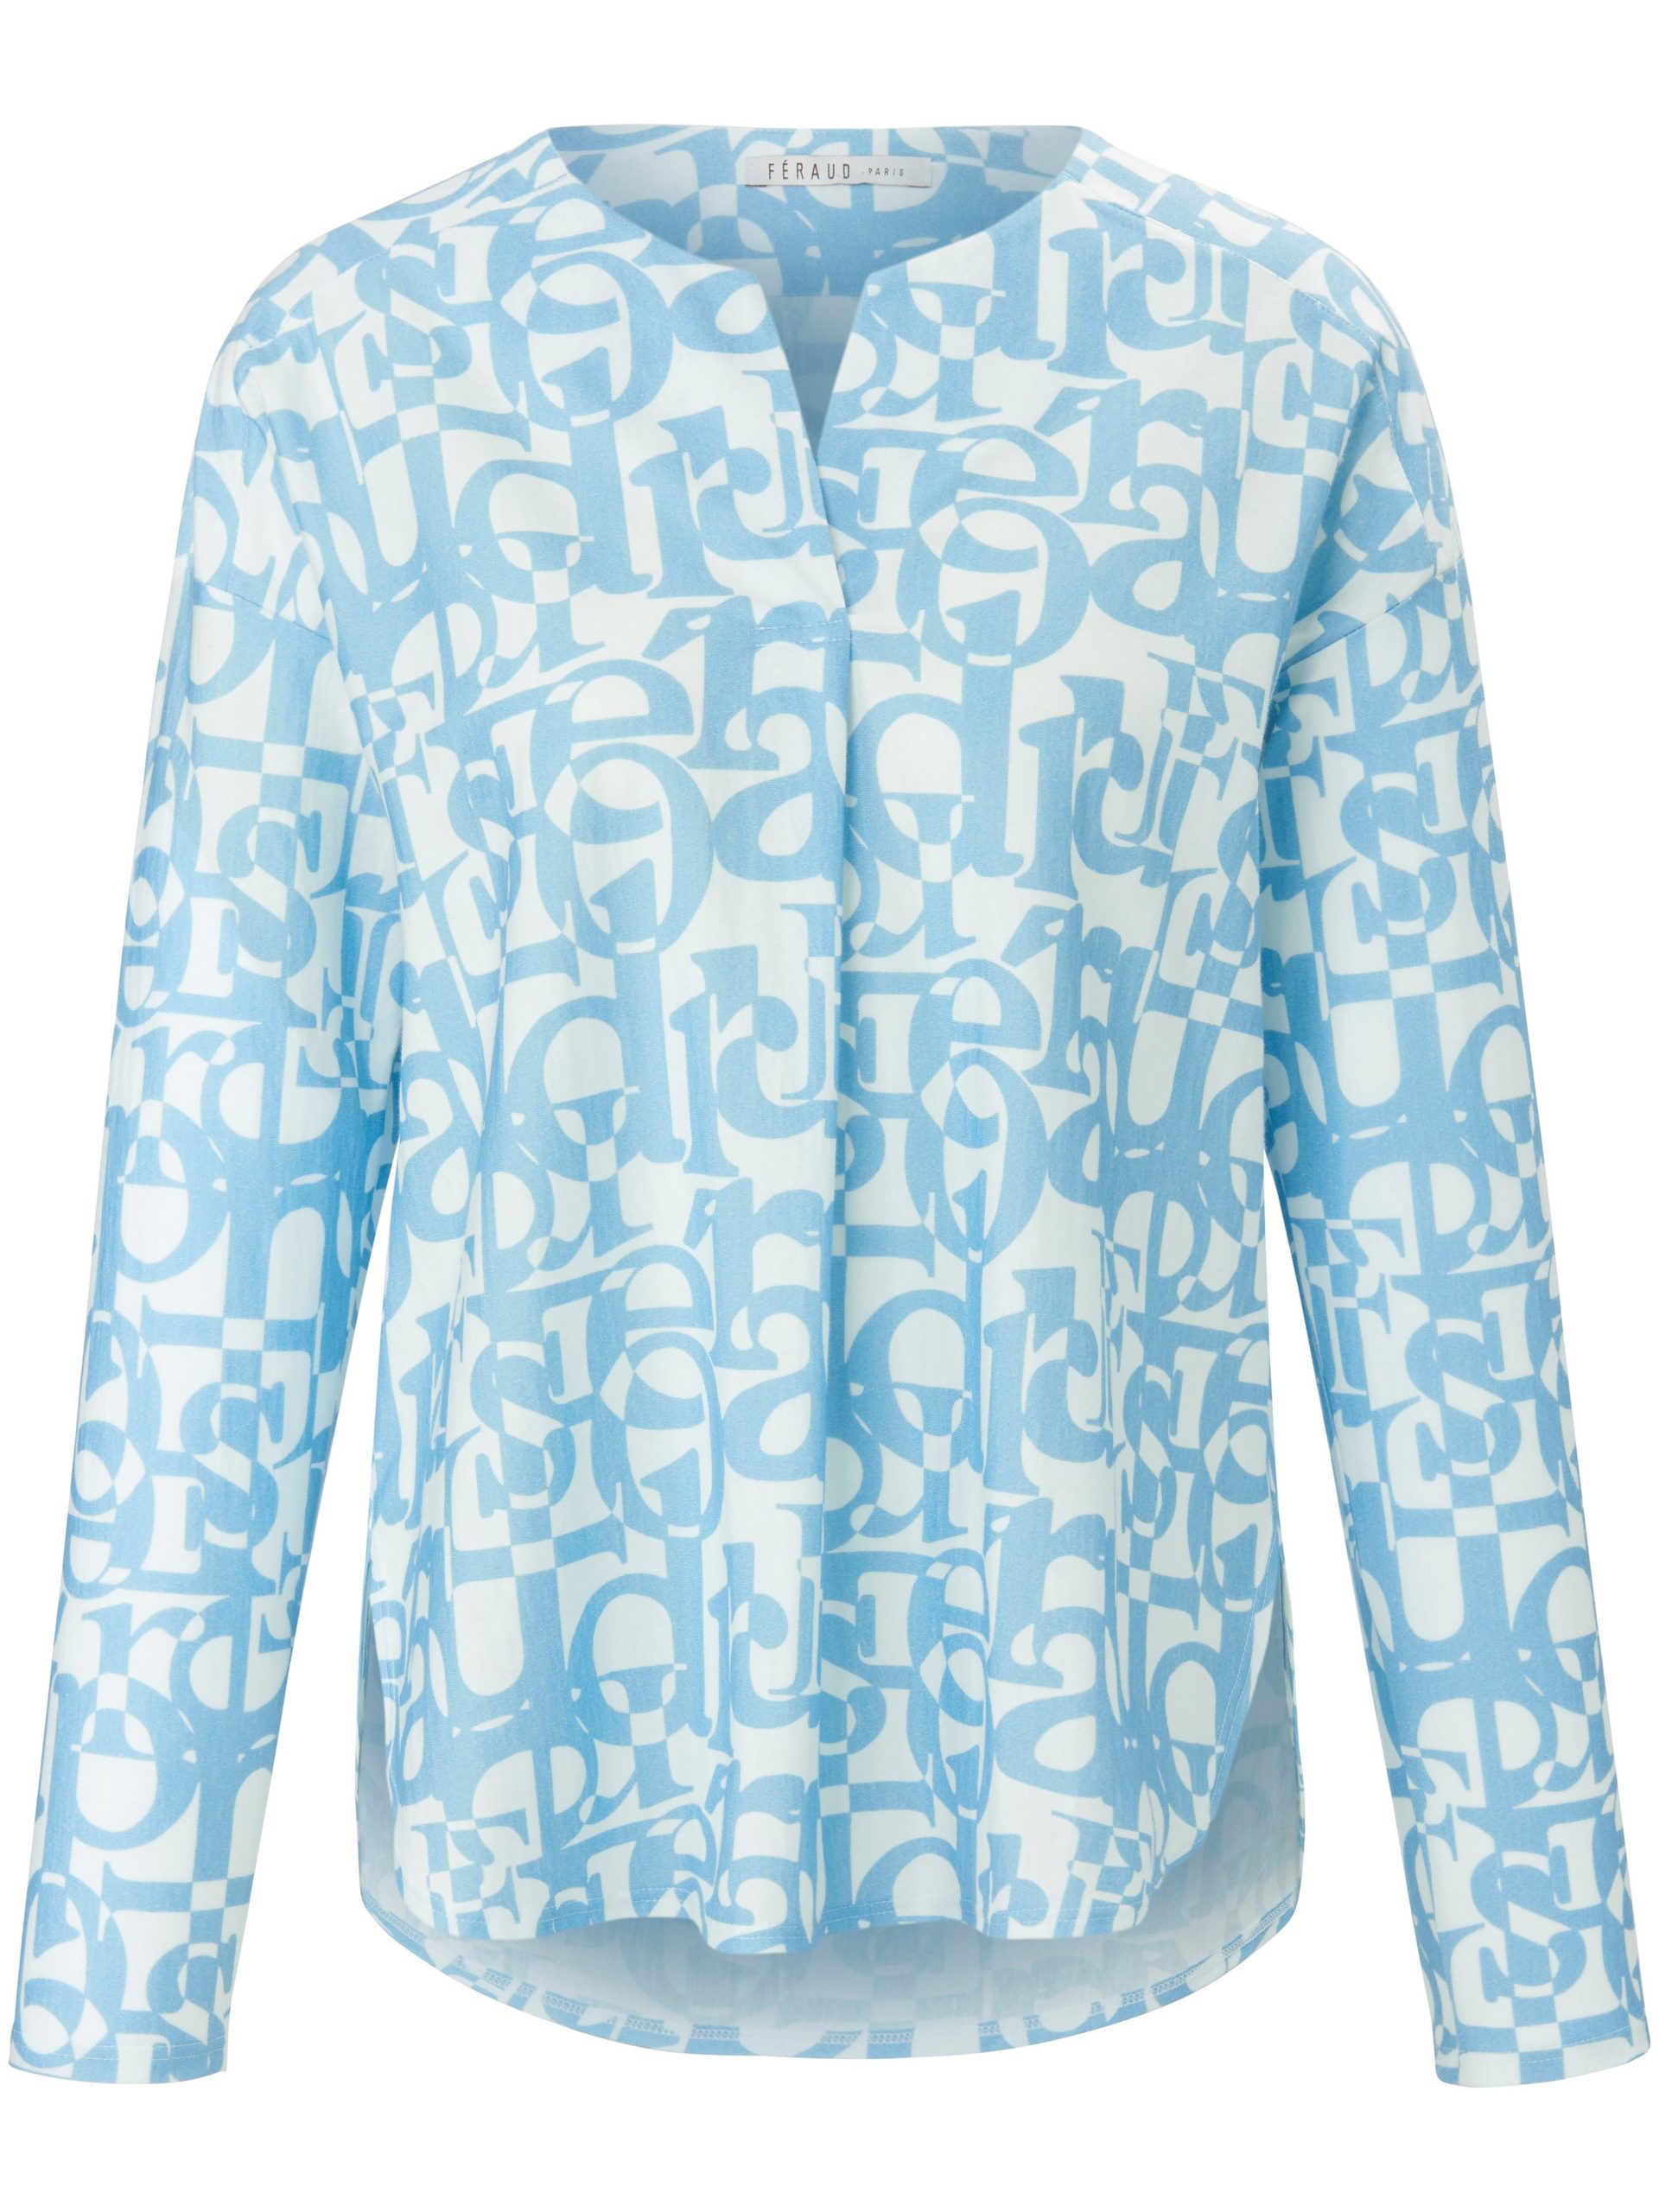 Pyjama van 100% katoen met letterprint Van Féraud blauw Kopen